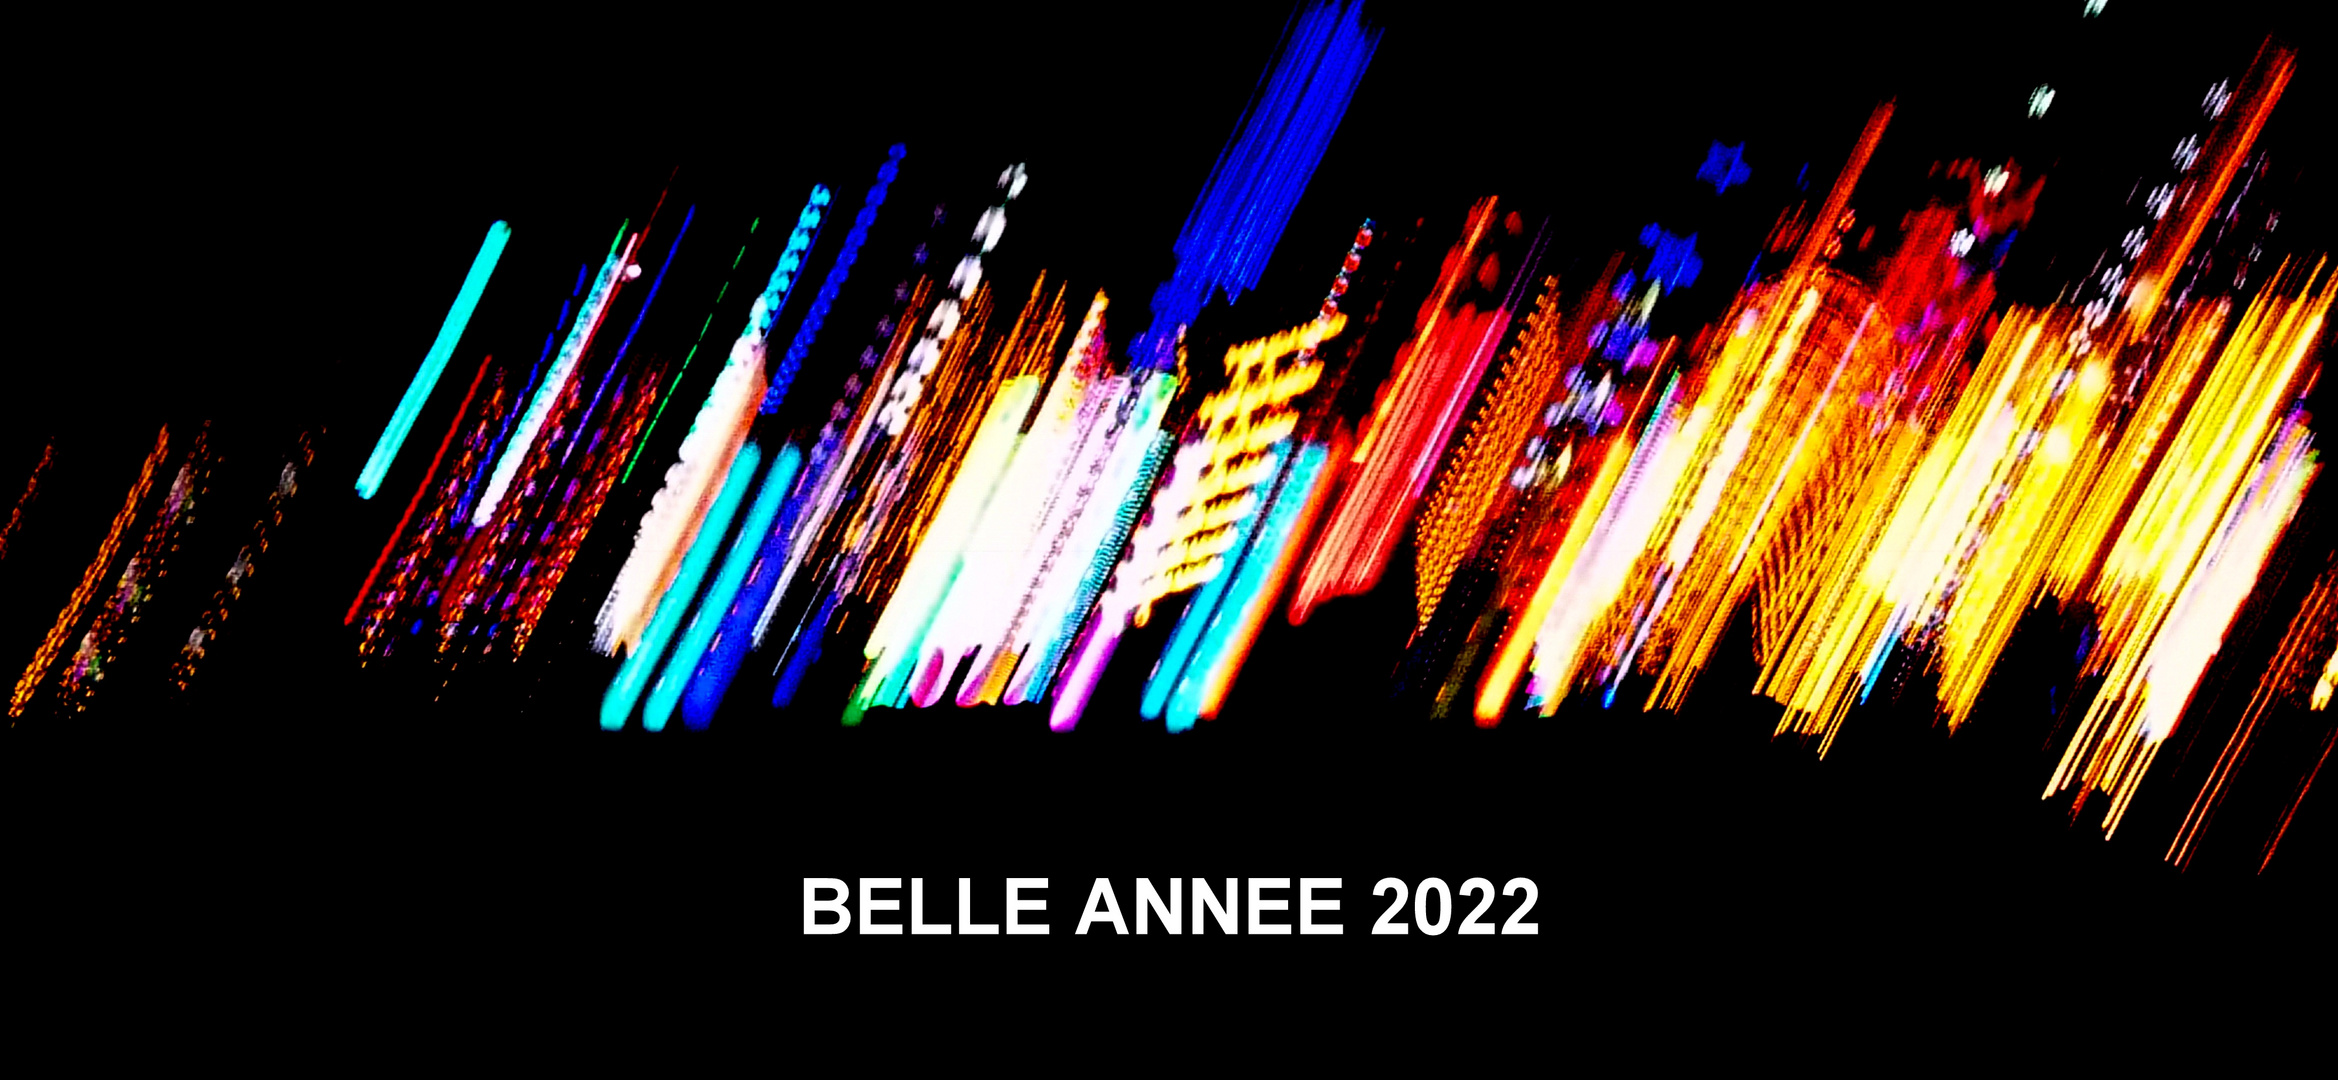 Belle année 2022  !!!  Frohes neues Jahr 2022